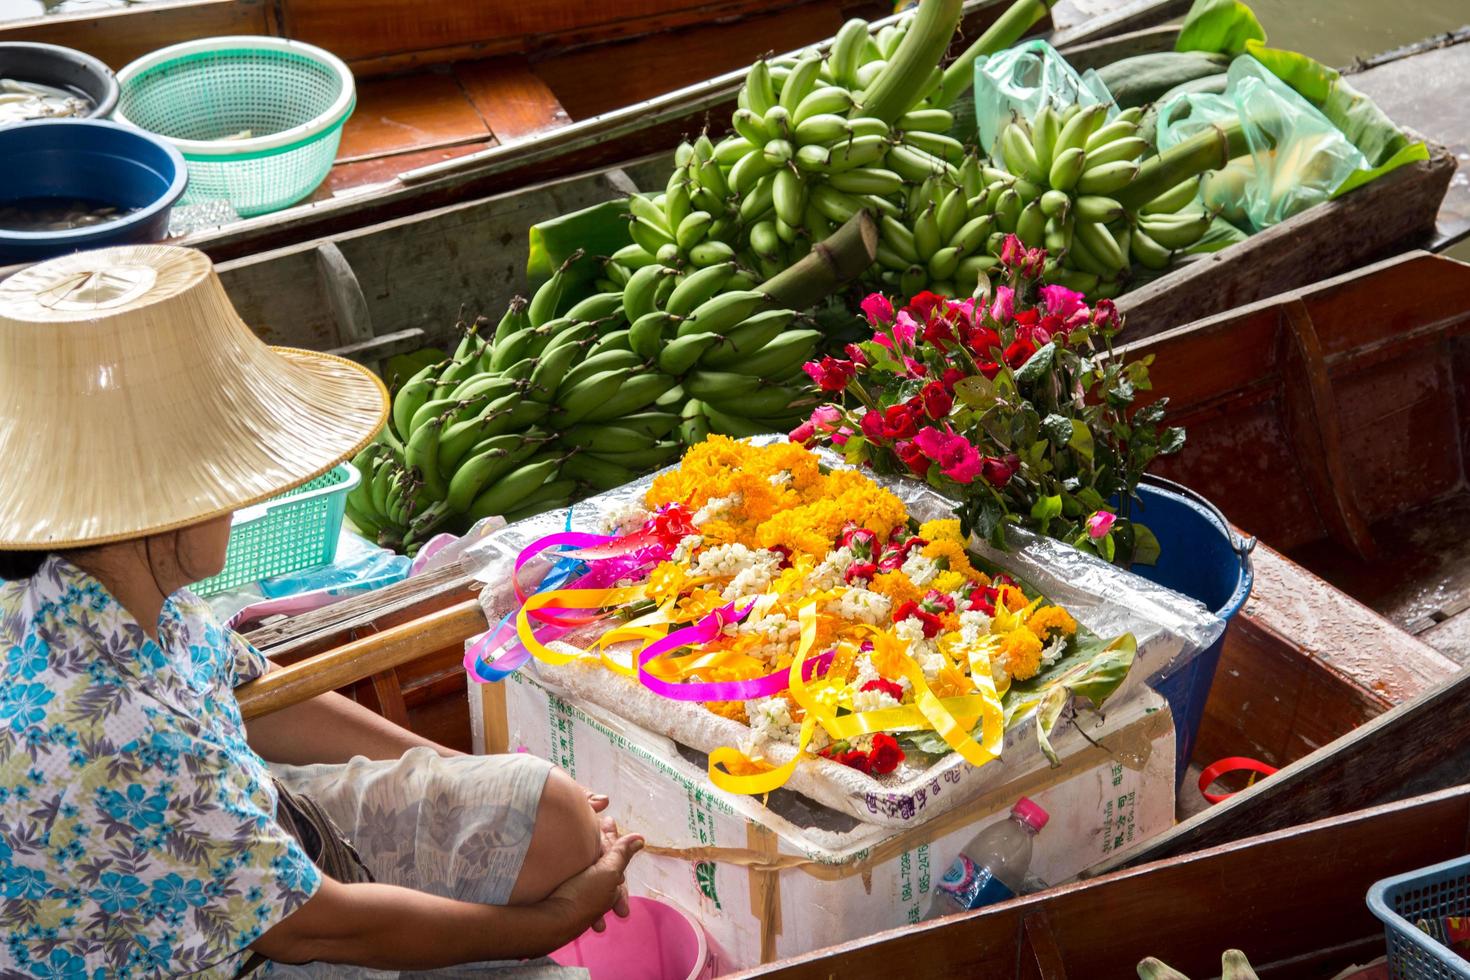 båtar försäljning olika frukt och mat på de flytande marknadsföra är populär turist attraktioner med traditionell by life-10-8-2014-damnoen saduak ratchaburi foto